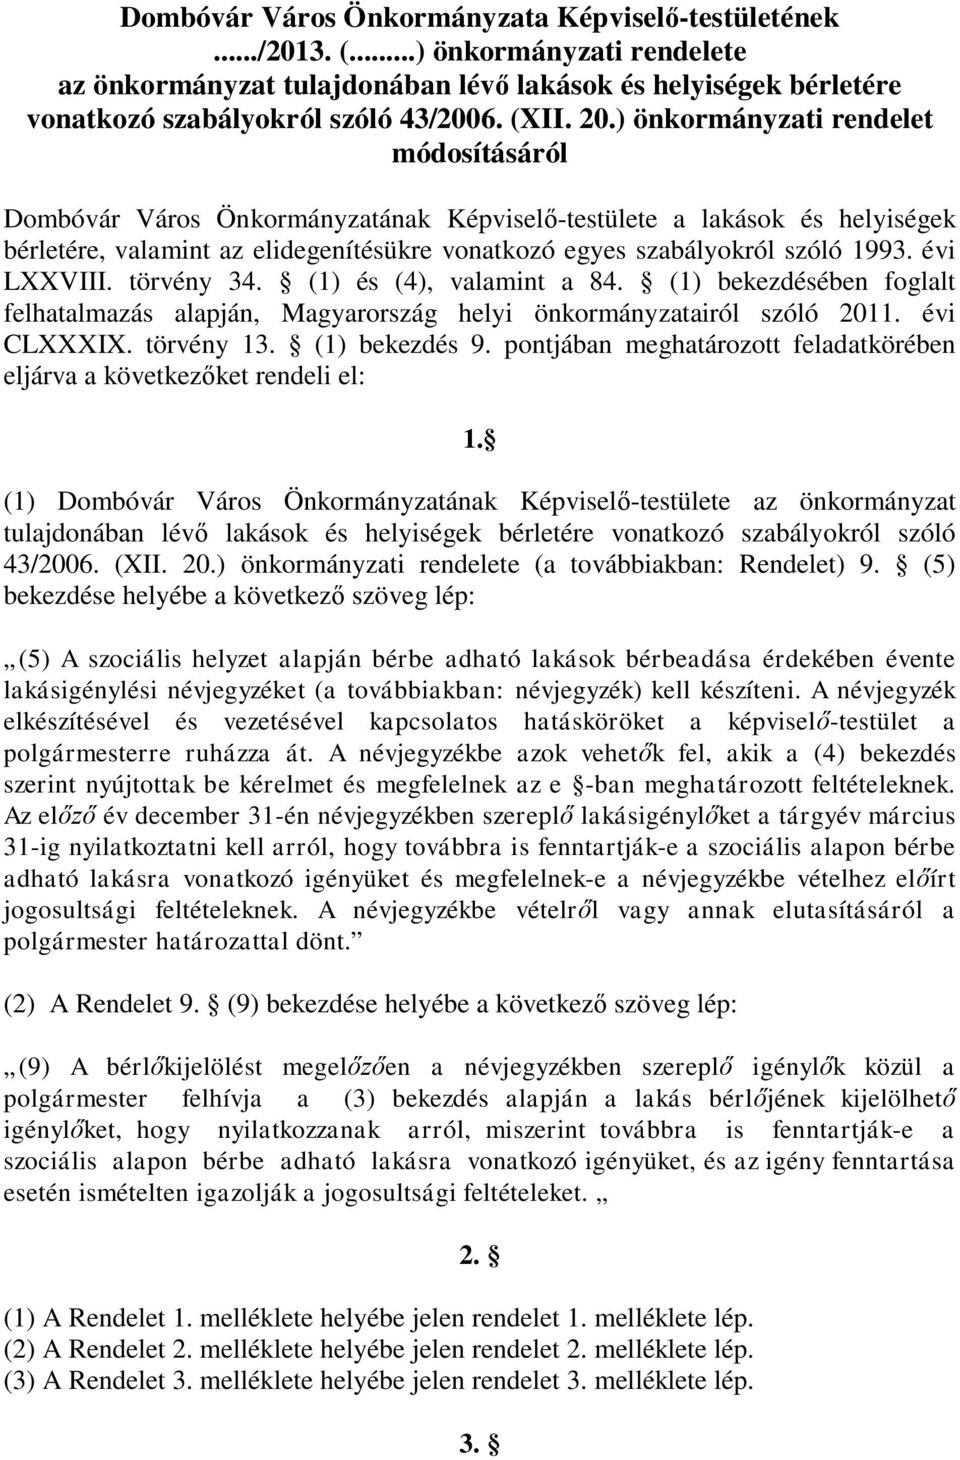 évi LXXVIII. törvény 34. (1) és (4), valamint a 84. (1) bekezdésében foglalt felhatalmazás alapján, Magyarország helyi önkormányzatairól szóló 2011. évi CLXXXIX. törvény 13. (1) bekezdés 9.